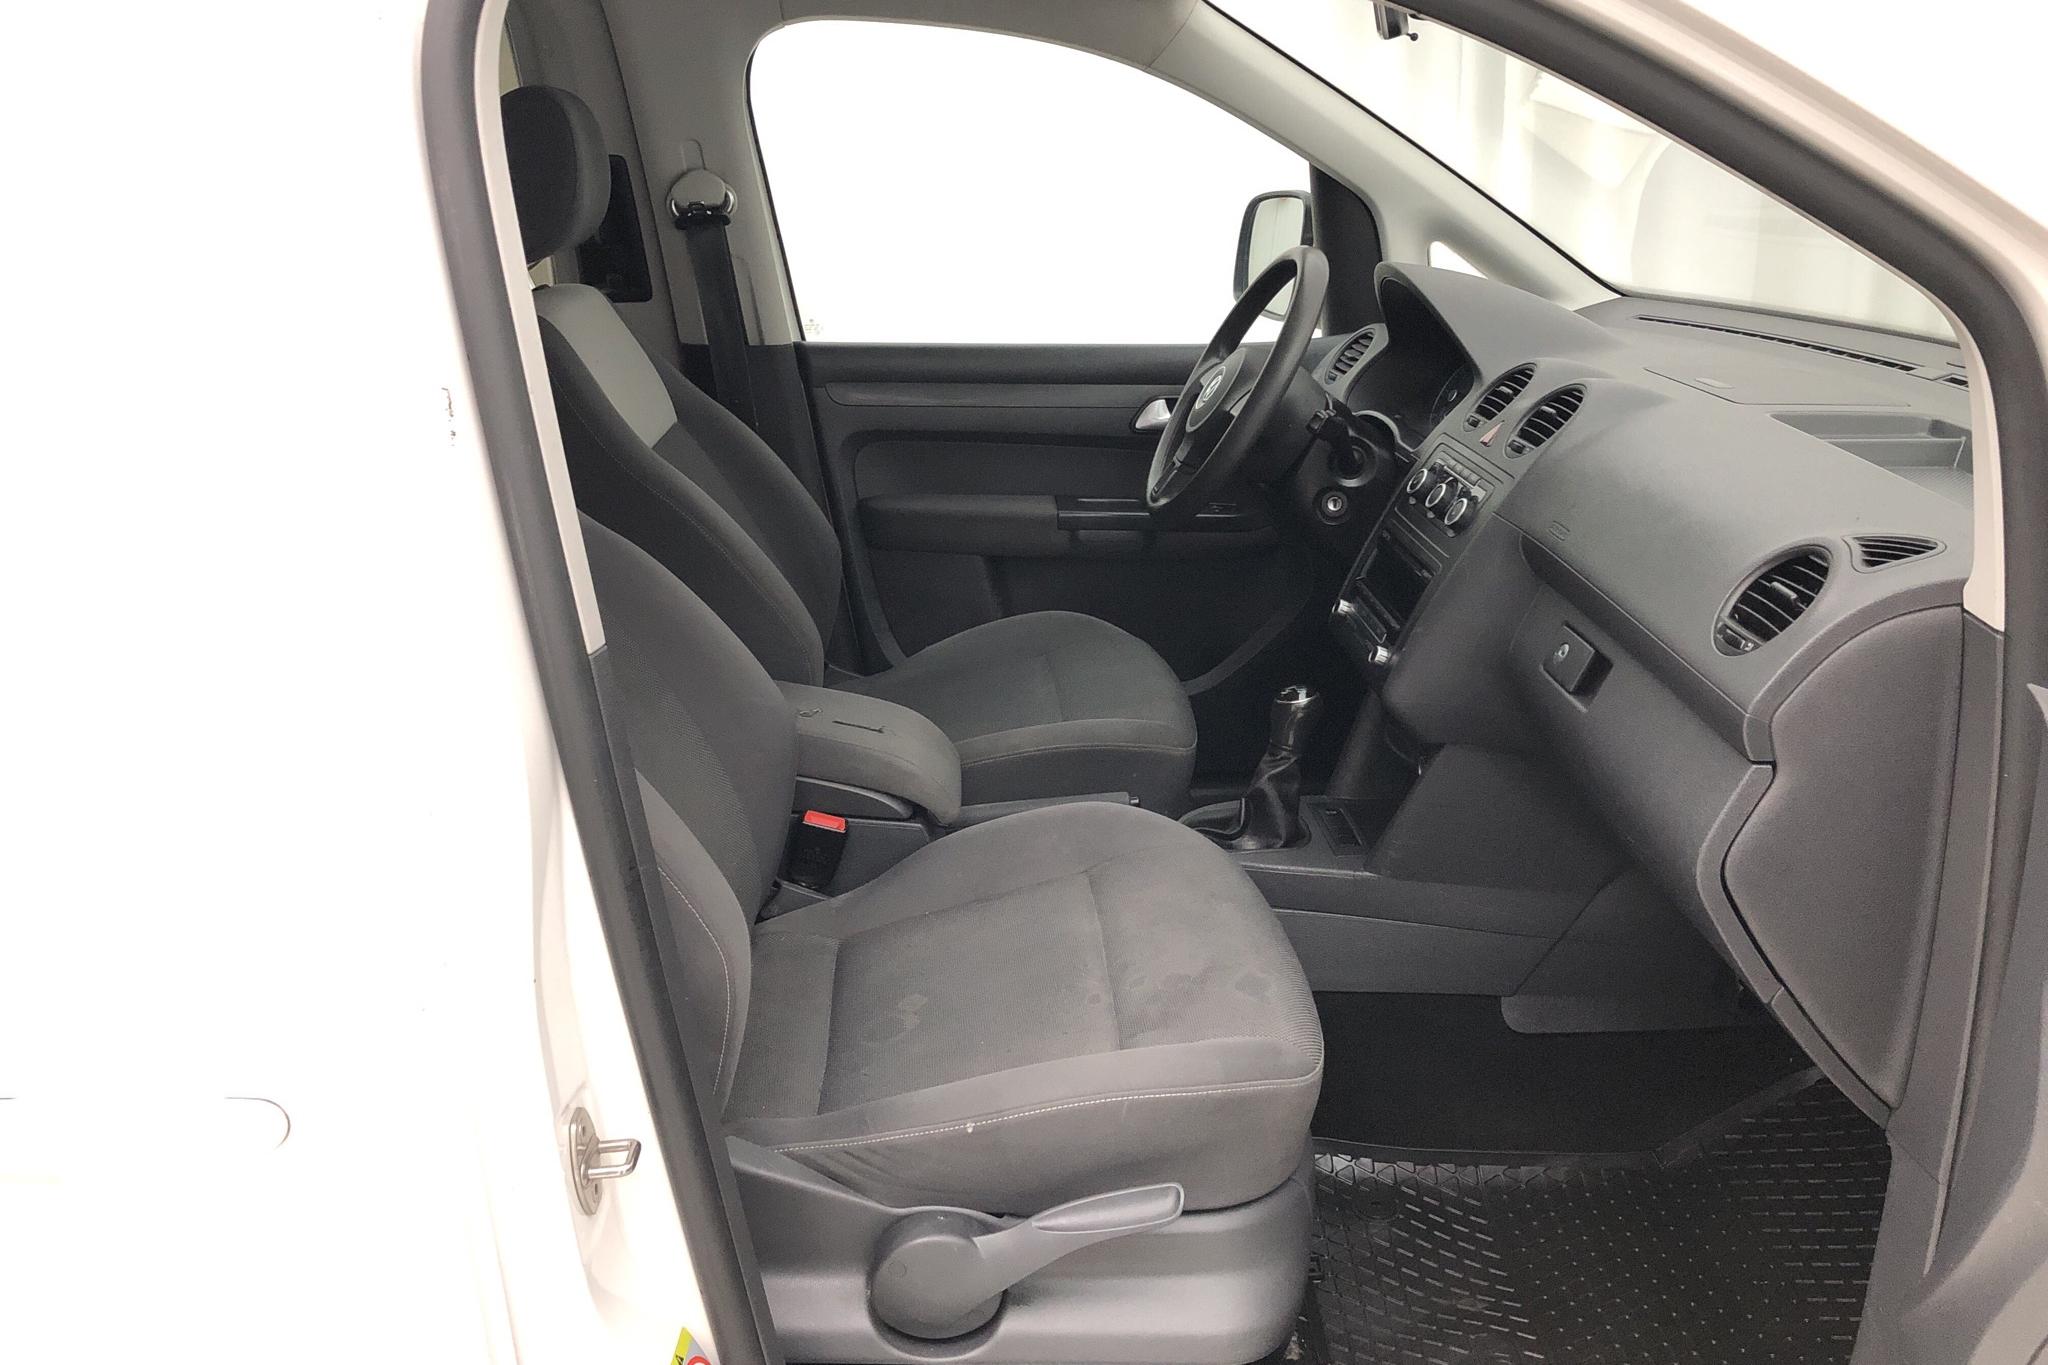 VW Caddy MPV 1.6 TDI (102hk) - 20 991 mil - Manuell - vit - 2014